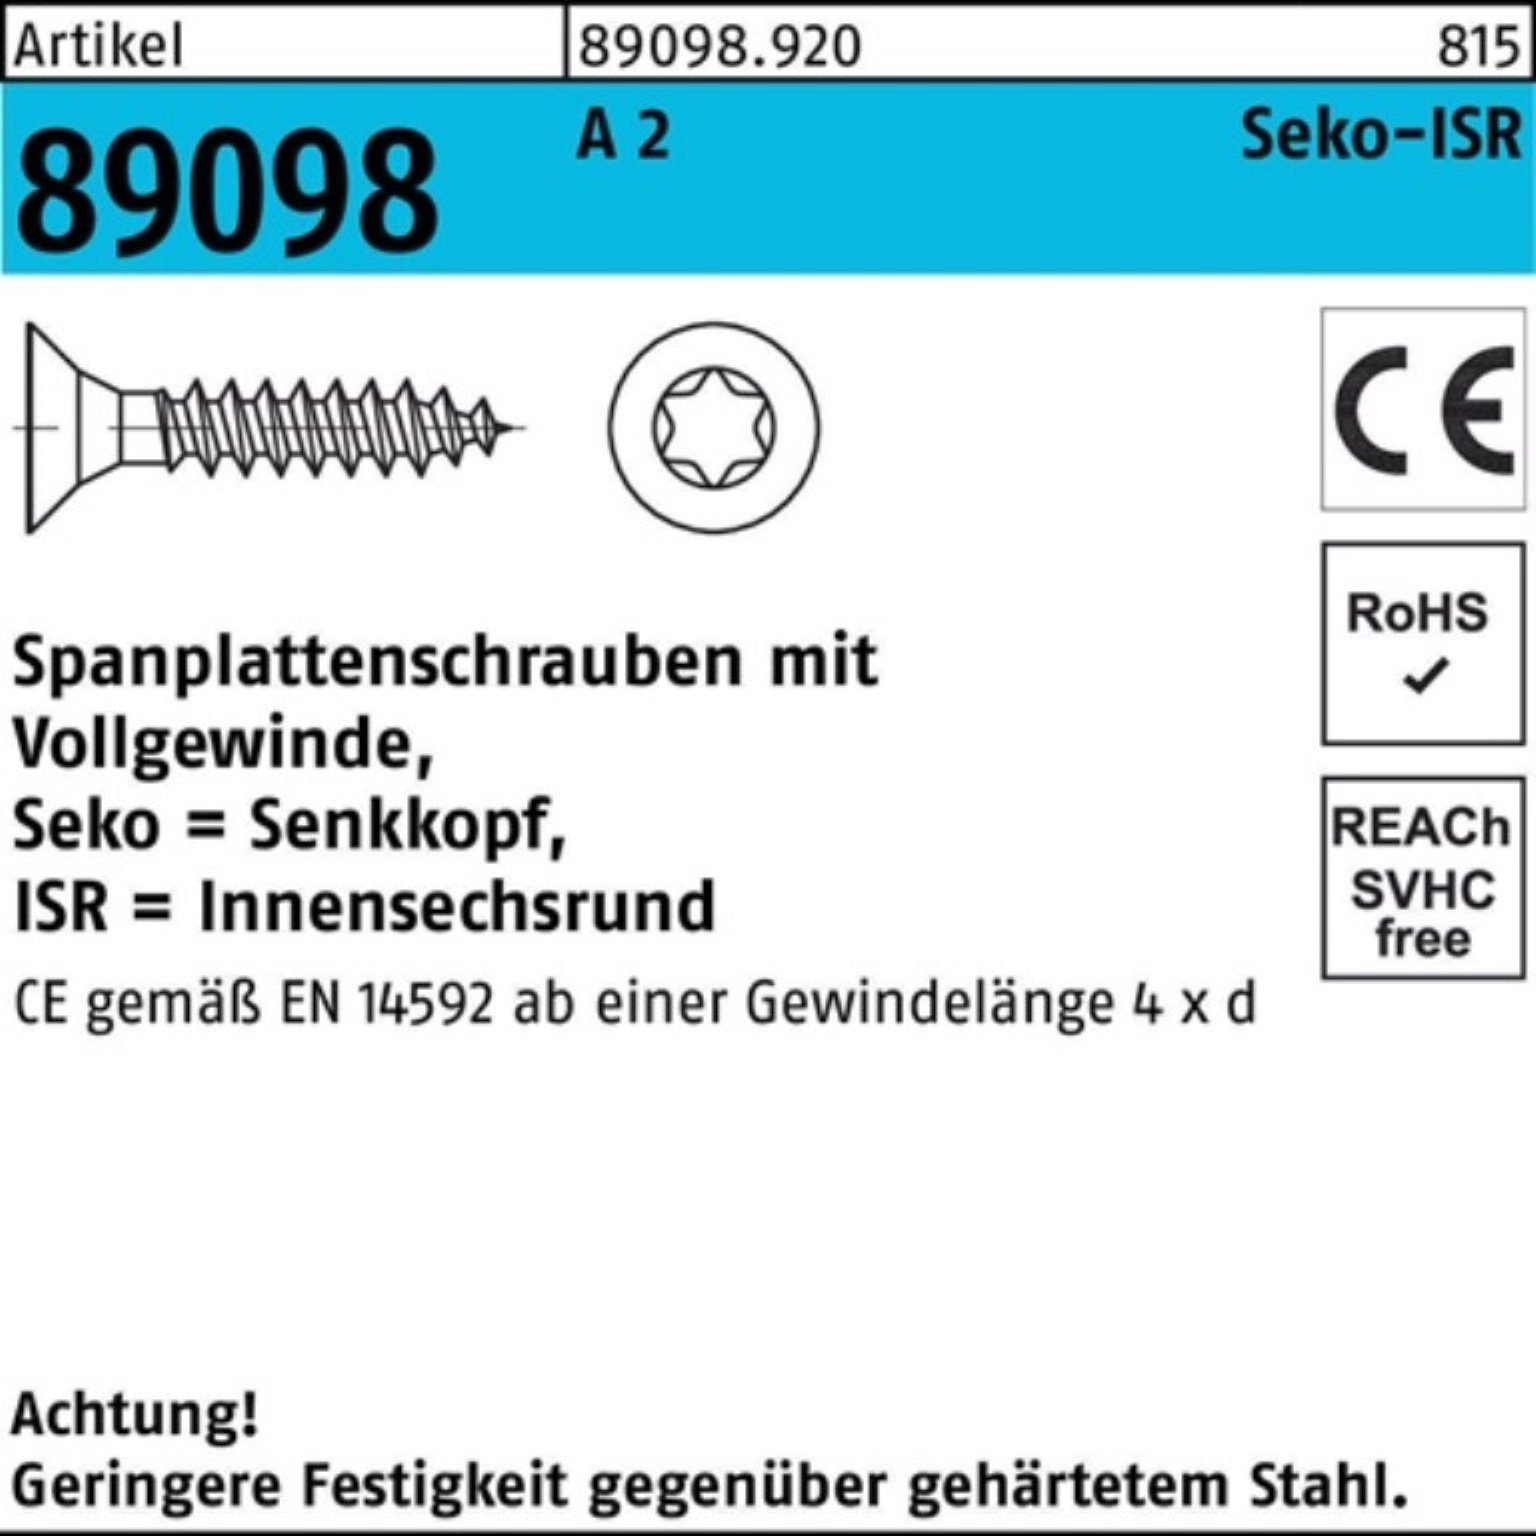 Reyher Spanplattenschraube 1000er Pack Spanplattenschraube R 89098 SEKO ISR VG 3,5x 20-T10 A 2 10